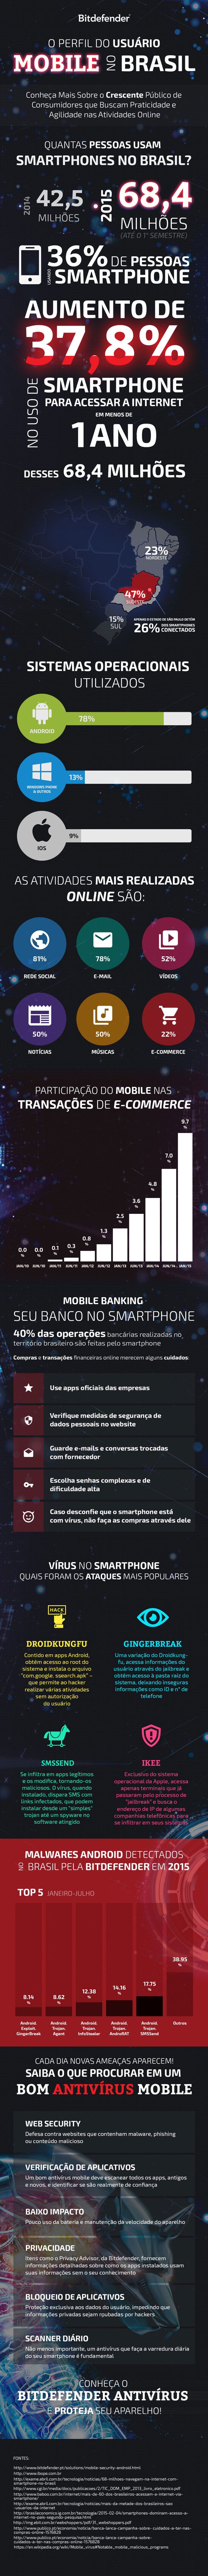 Perfil do utilizador mobile no Brasil